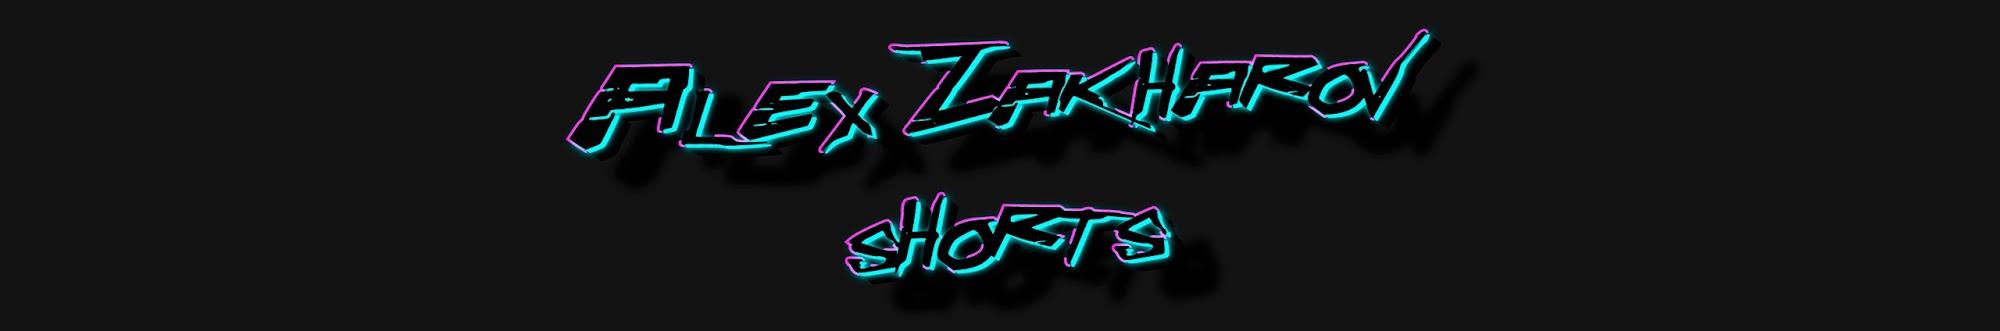 Alex Zakharov Shorts